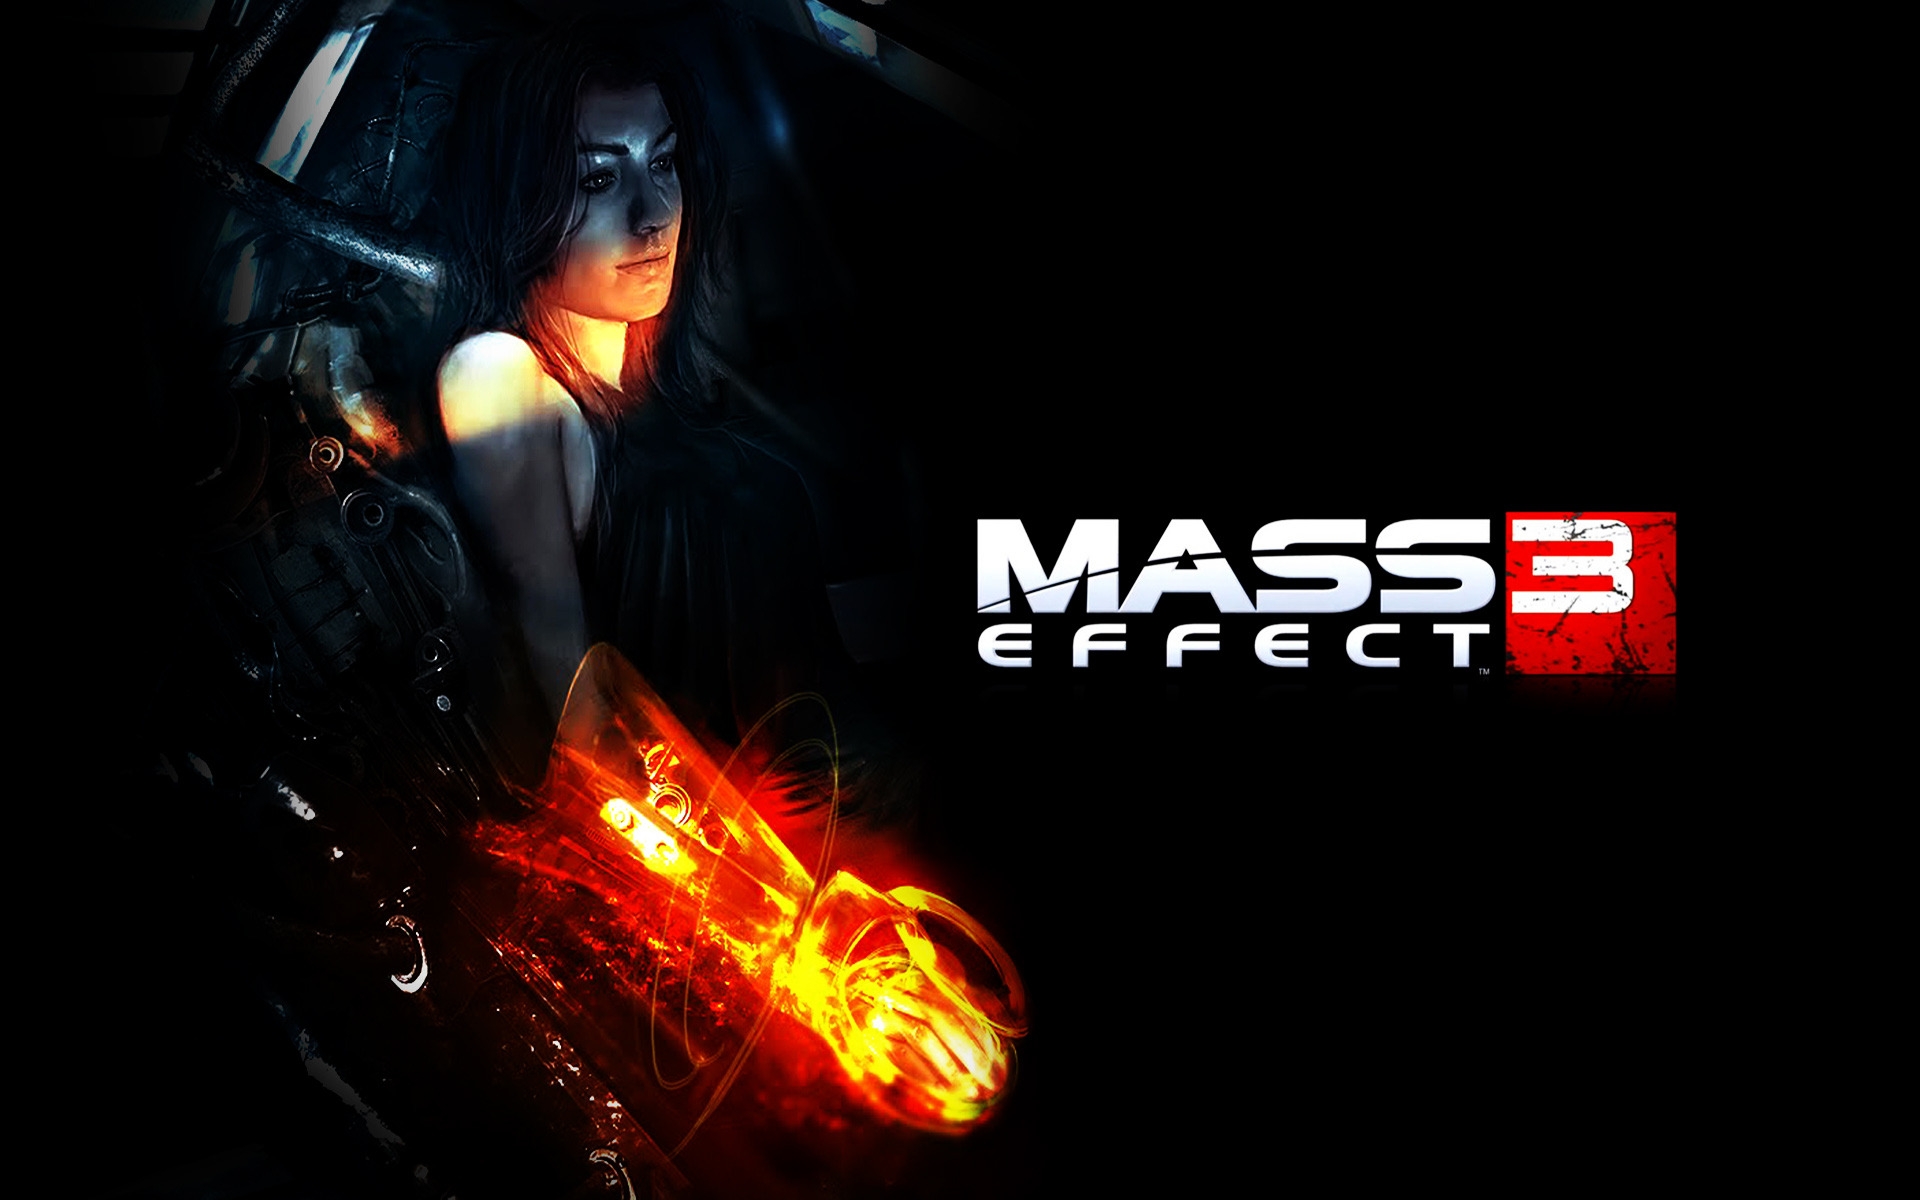 Miranda Mass Effect 3 for 1920 x 1200 widescreen resolution